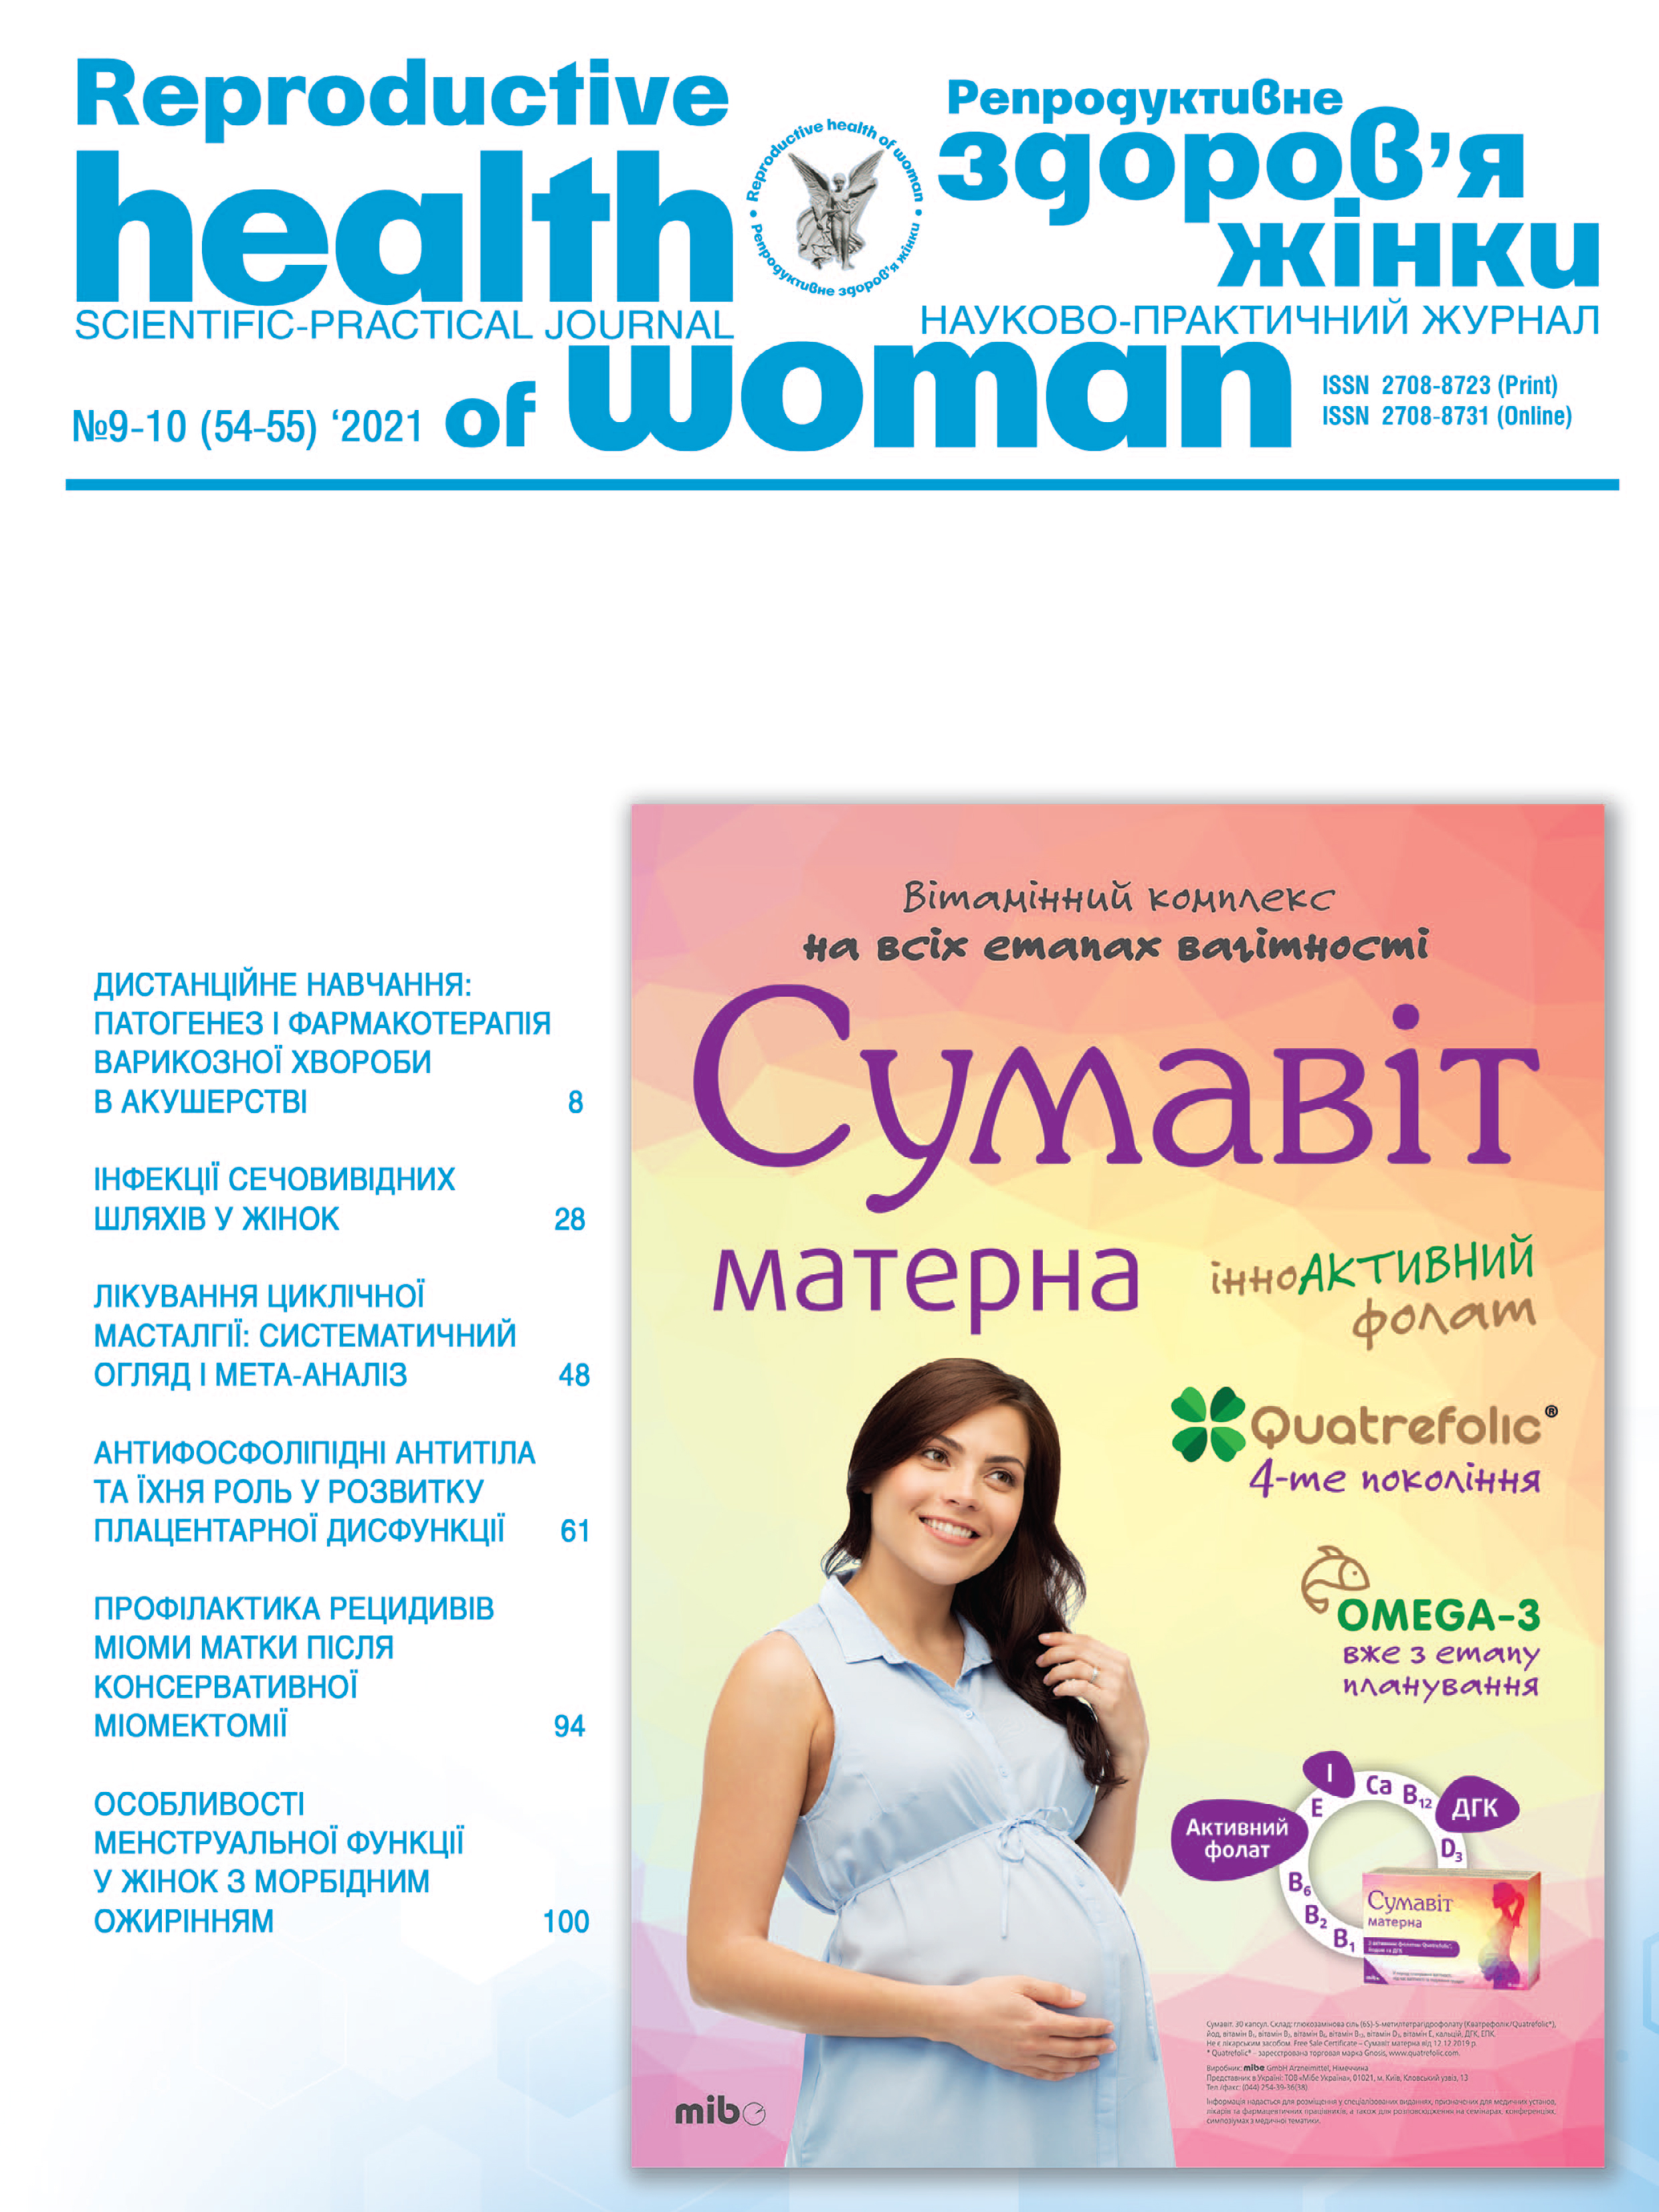 Репродуктивне здоров'я жінки № 9-10 (2021)